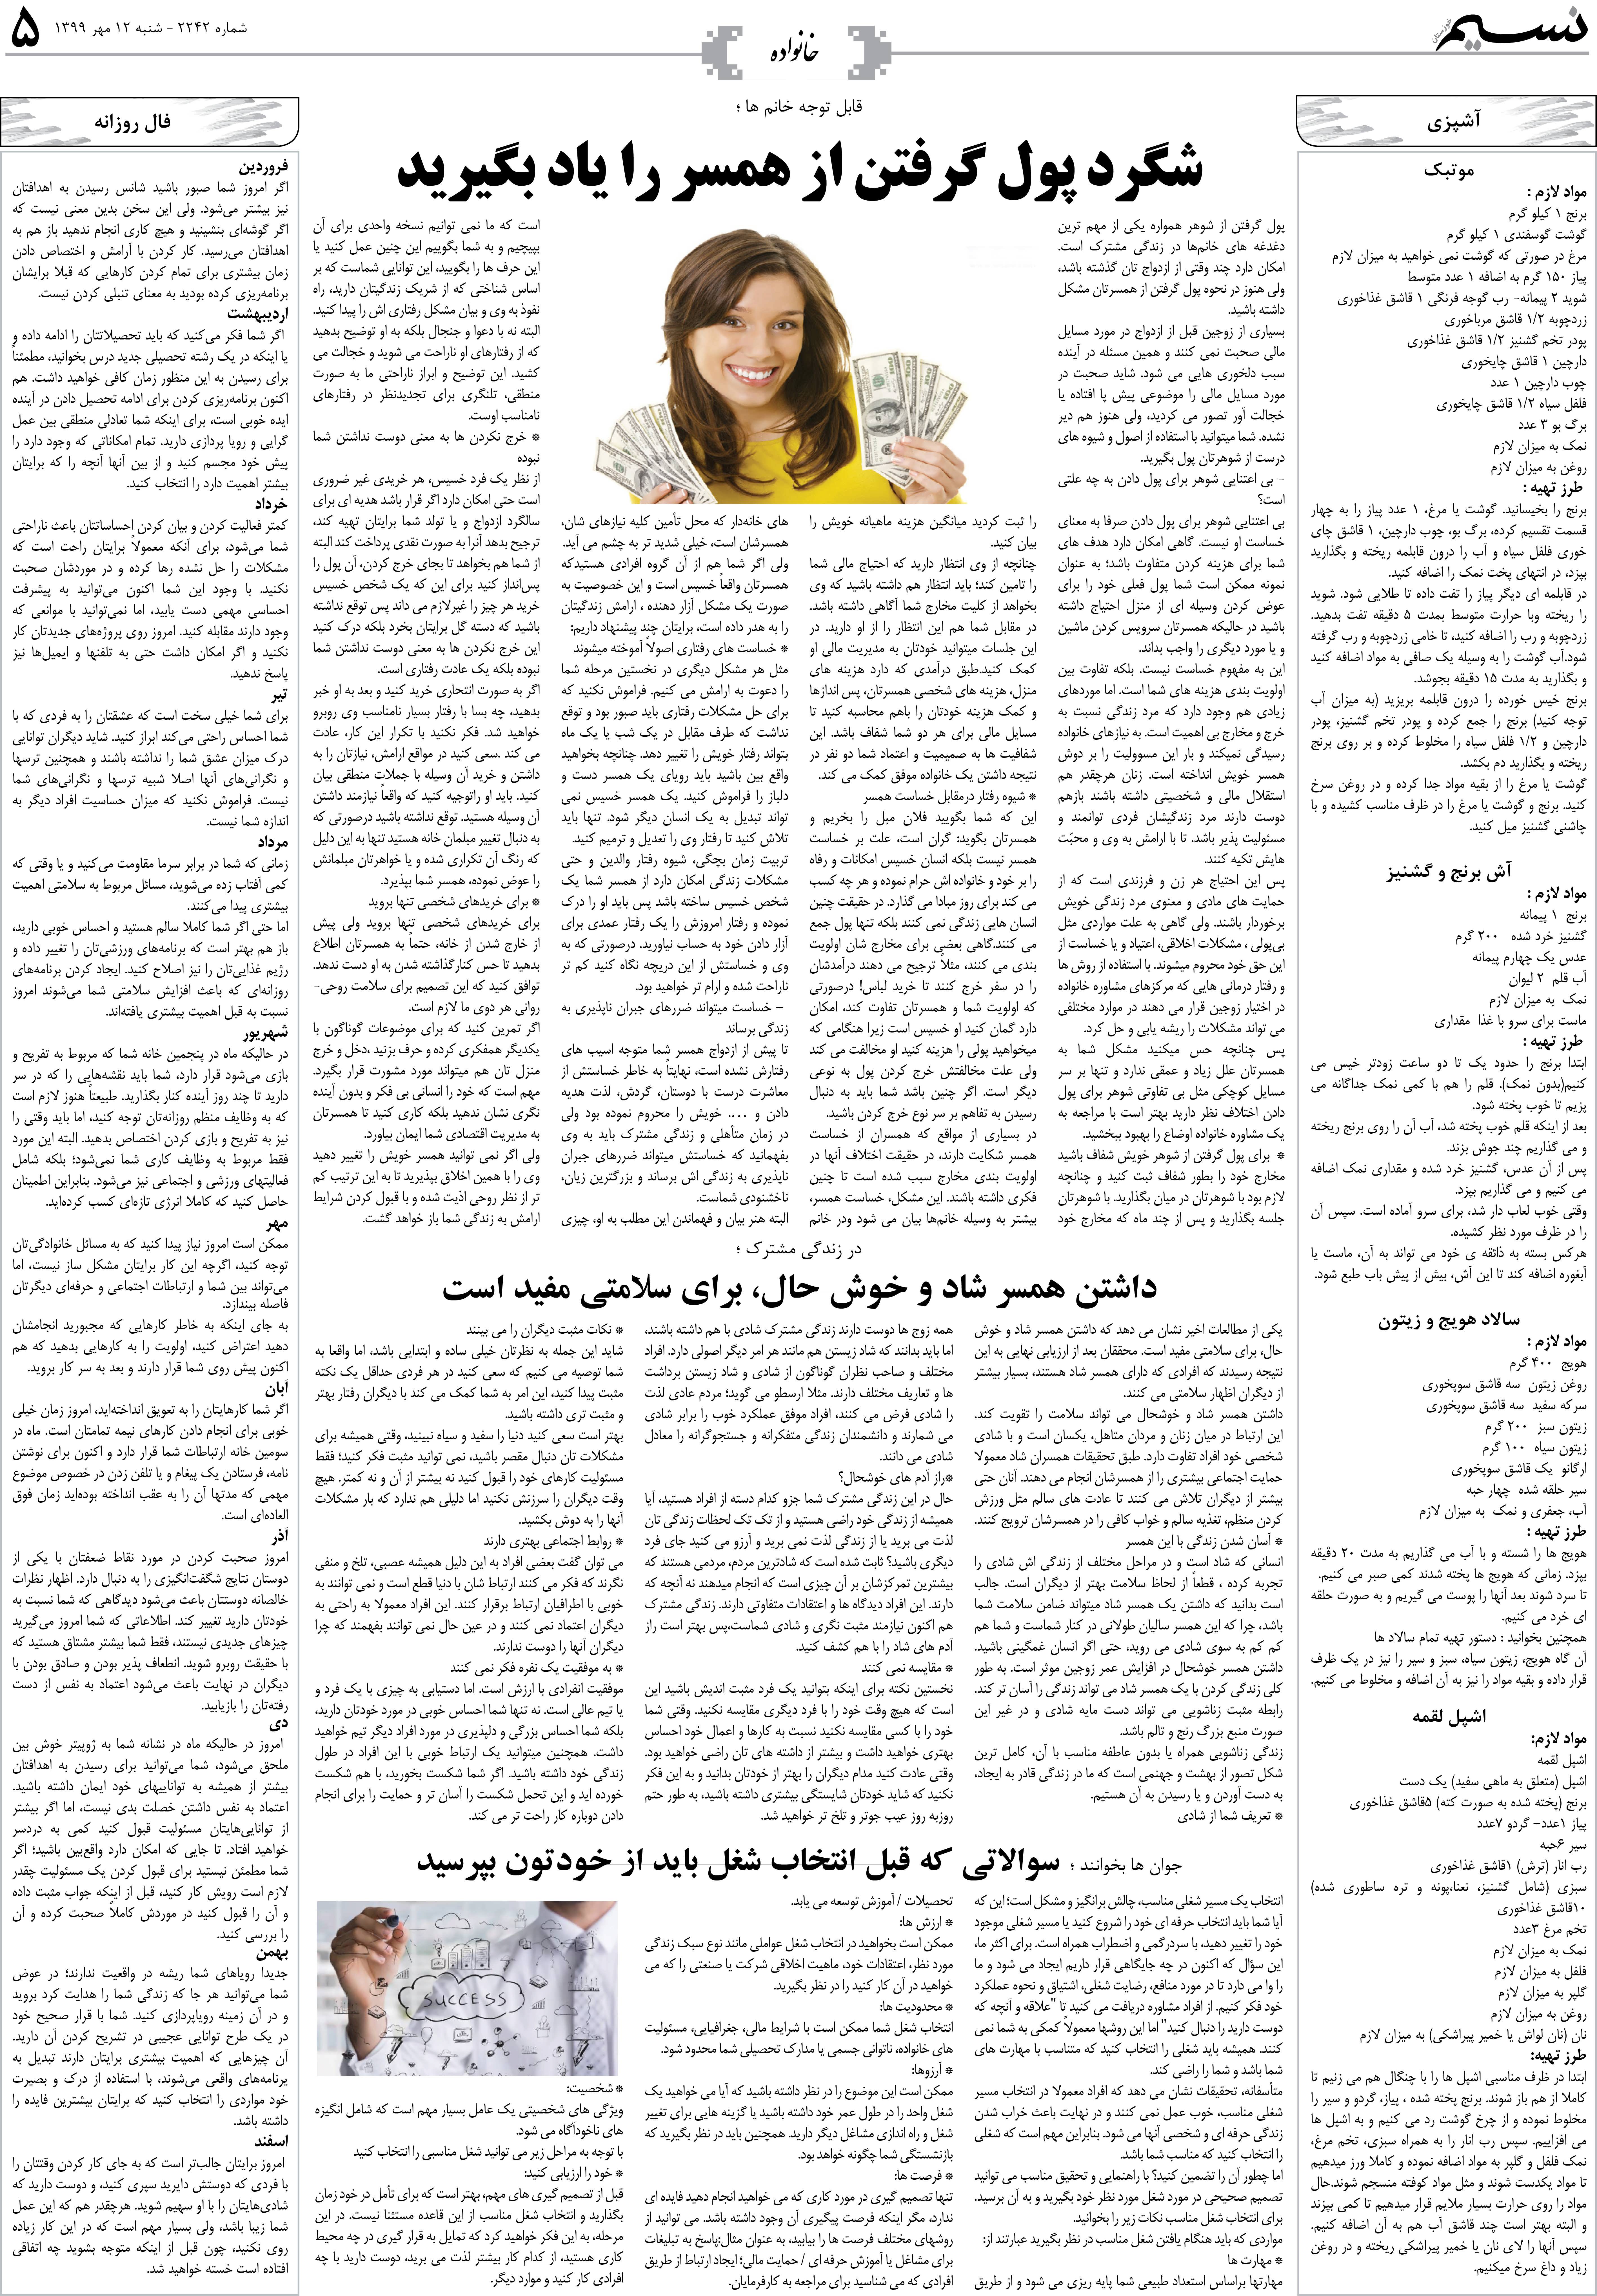 صفحه خانواده روزنامه نسیم شماره 2242